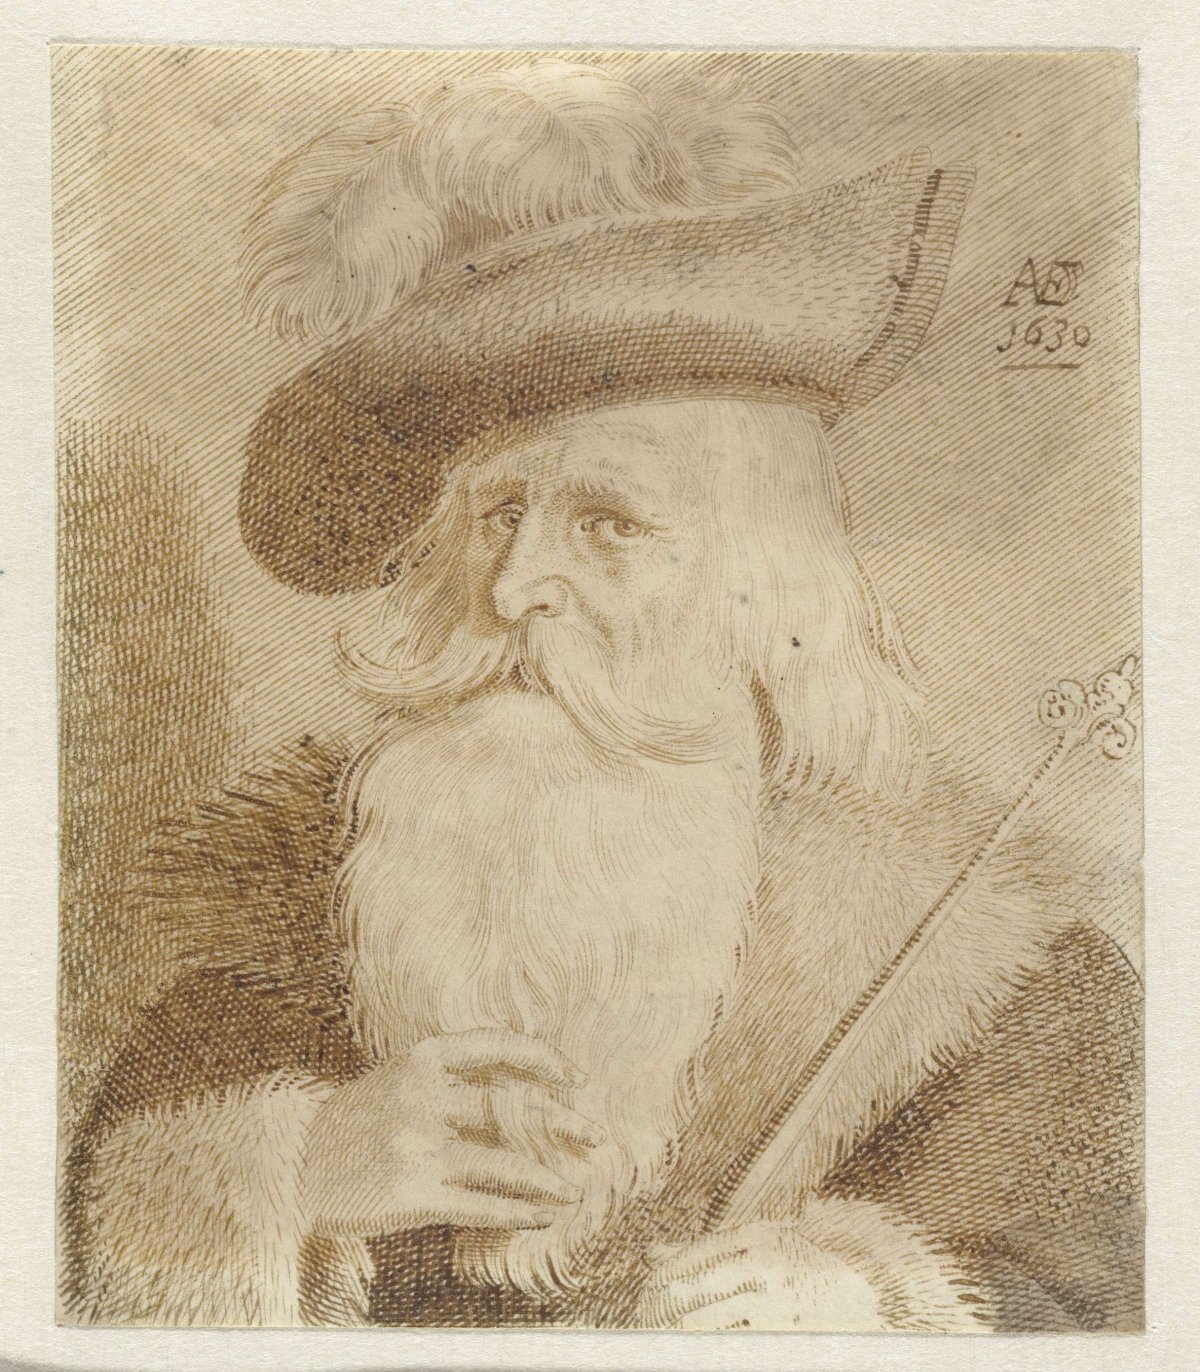 Man with fur collar, hat and staff, Jan van de Velde (II), 1630